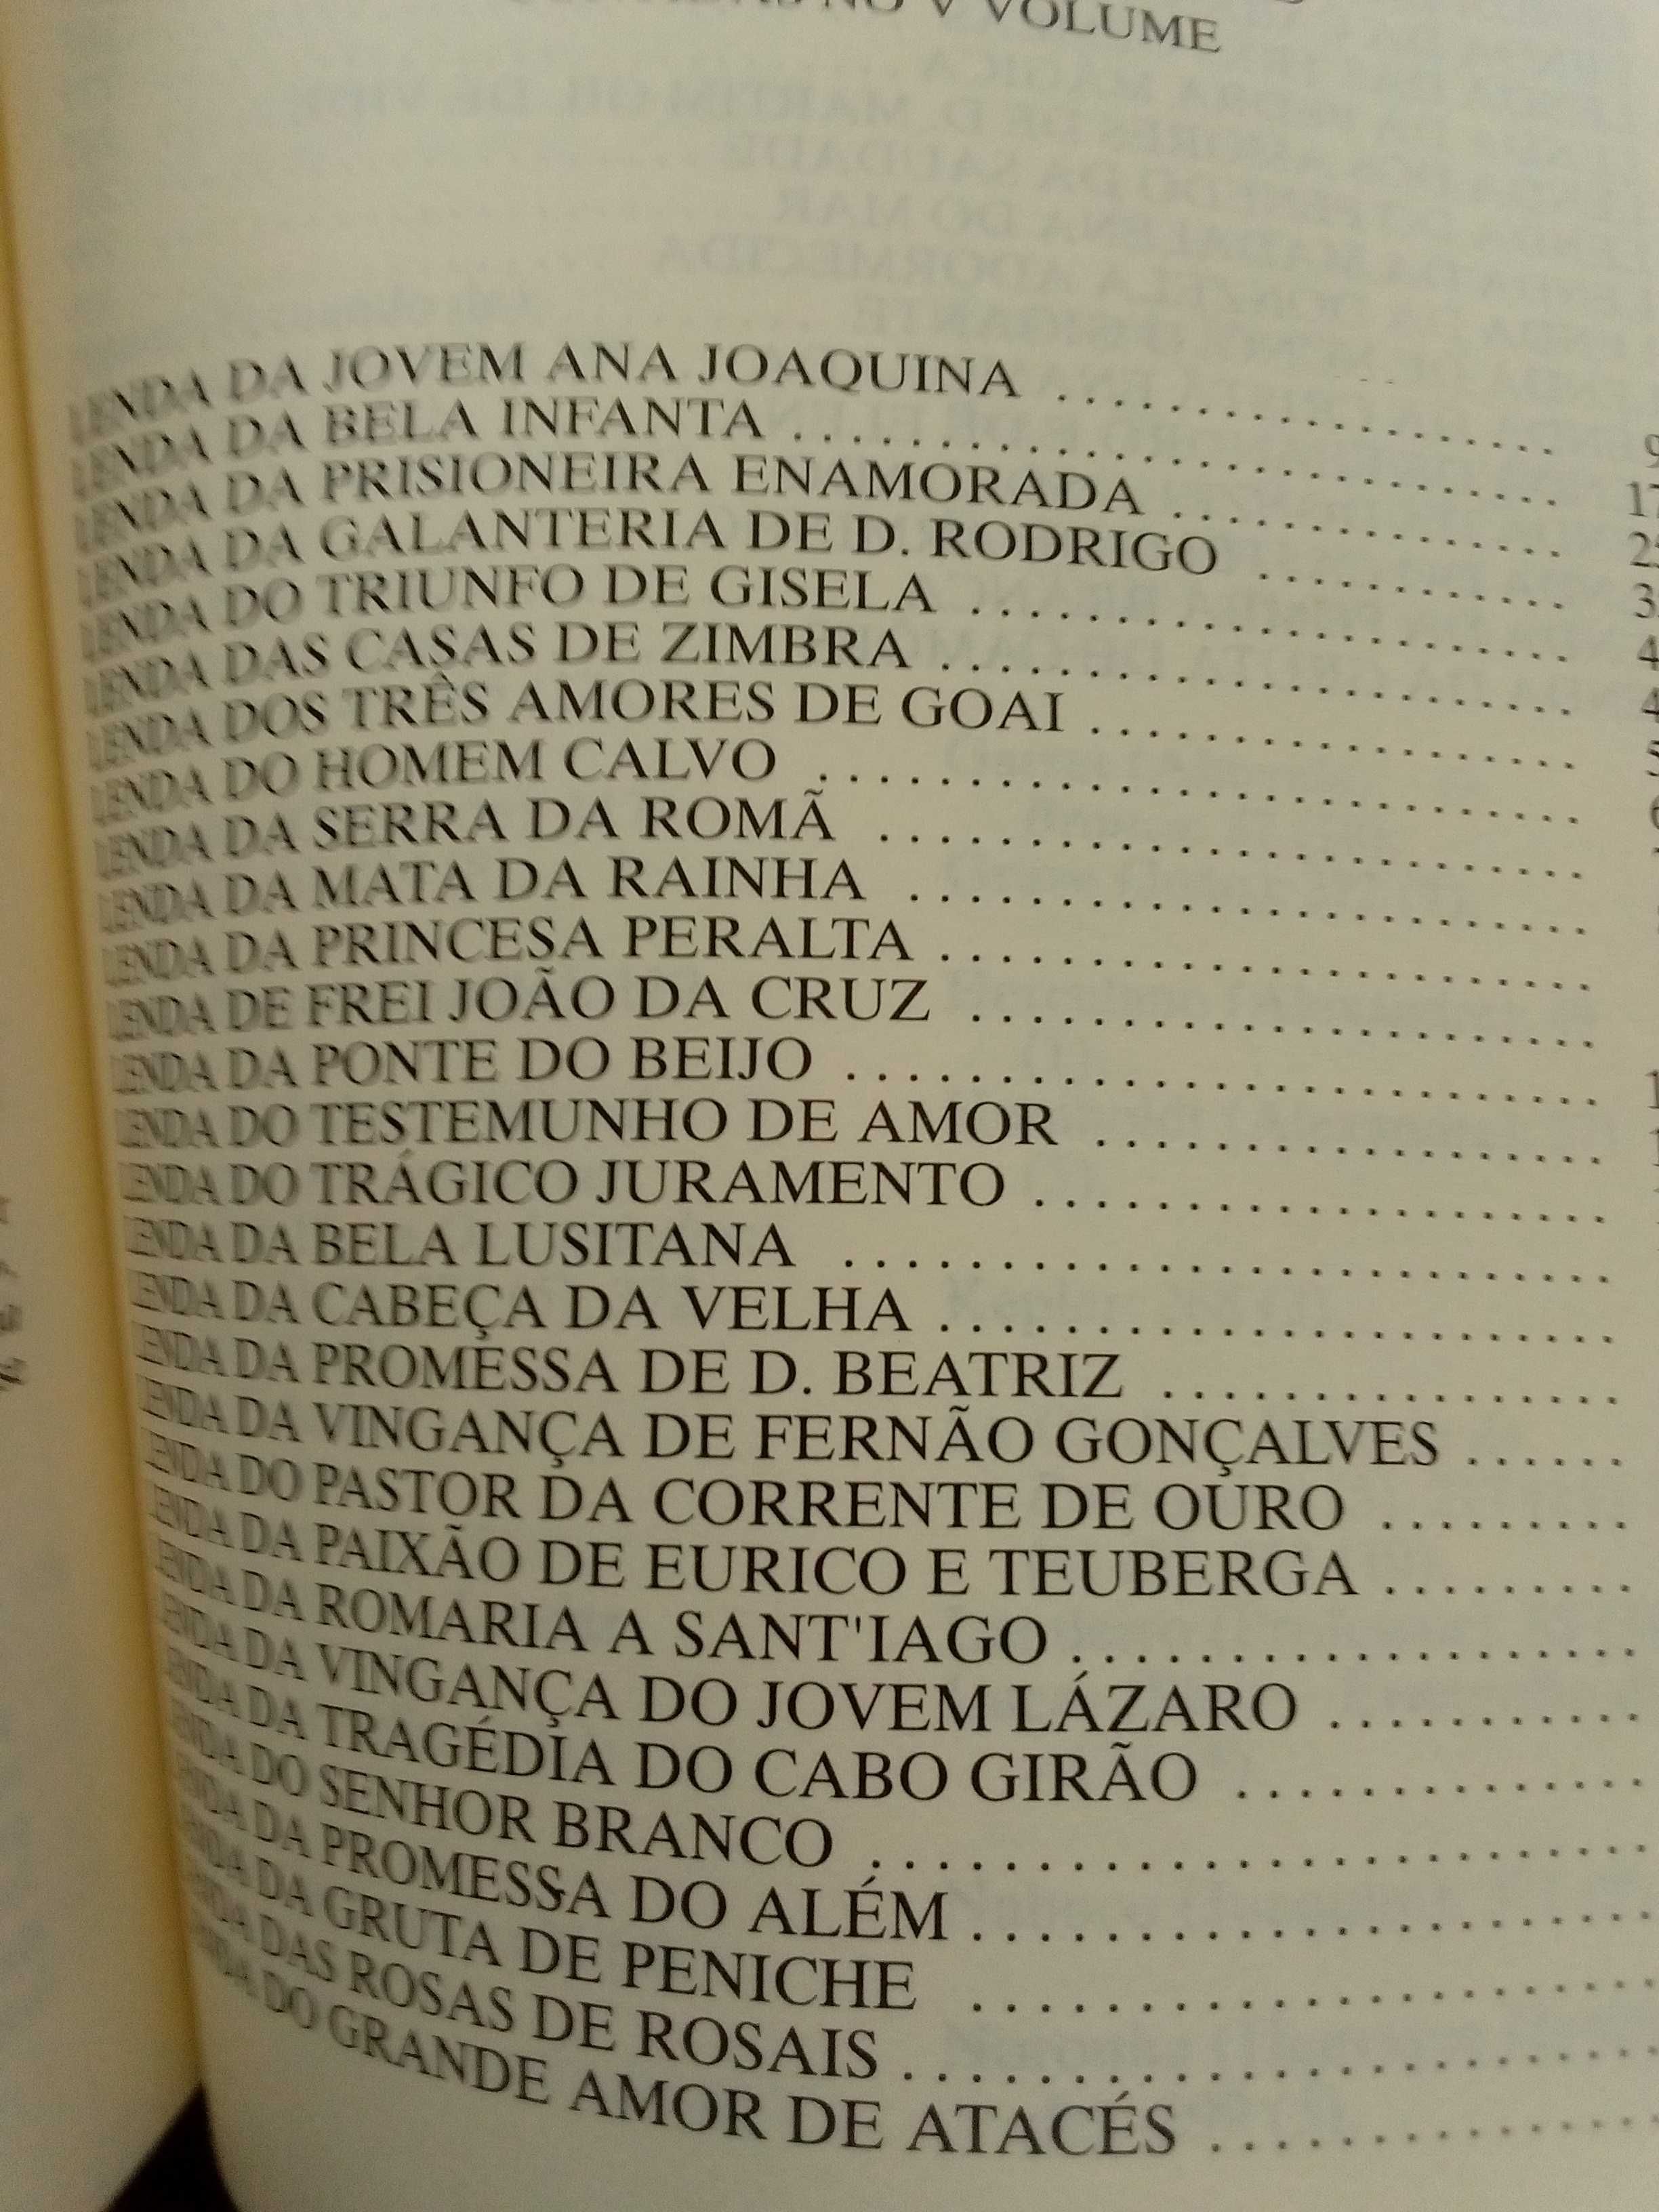 Gentil Marques - Lendas de Portugal Vol.5